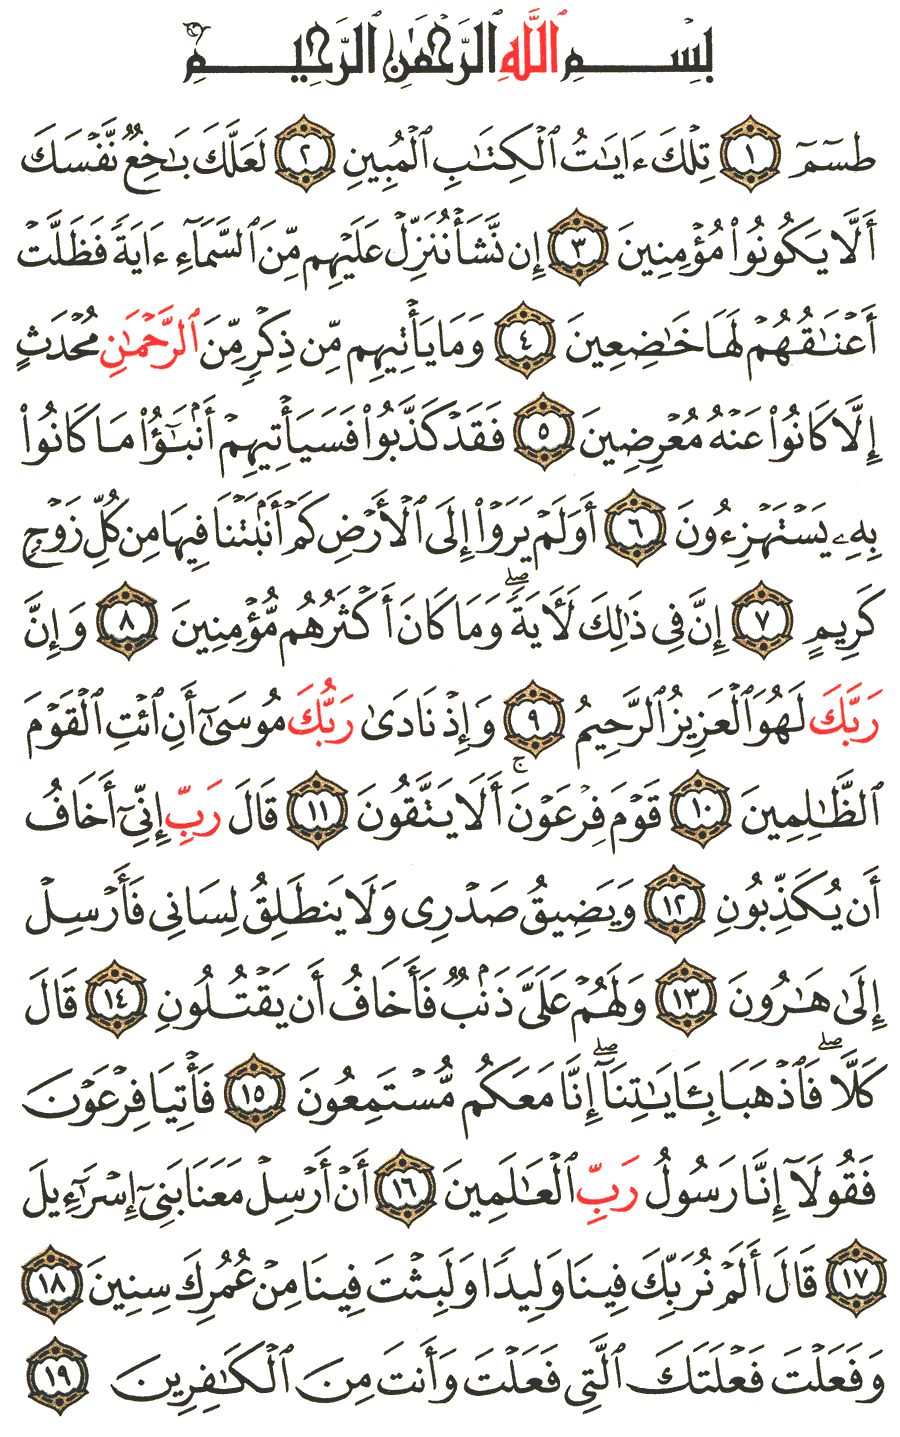 الصفحة رقم 367  من القرآن الكريم مكتوبة من المصحف